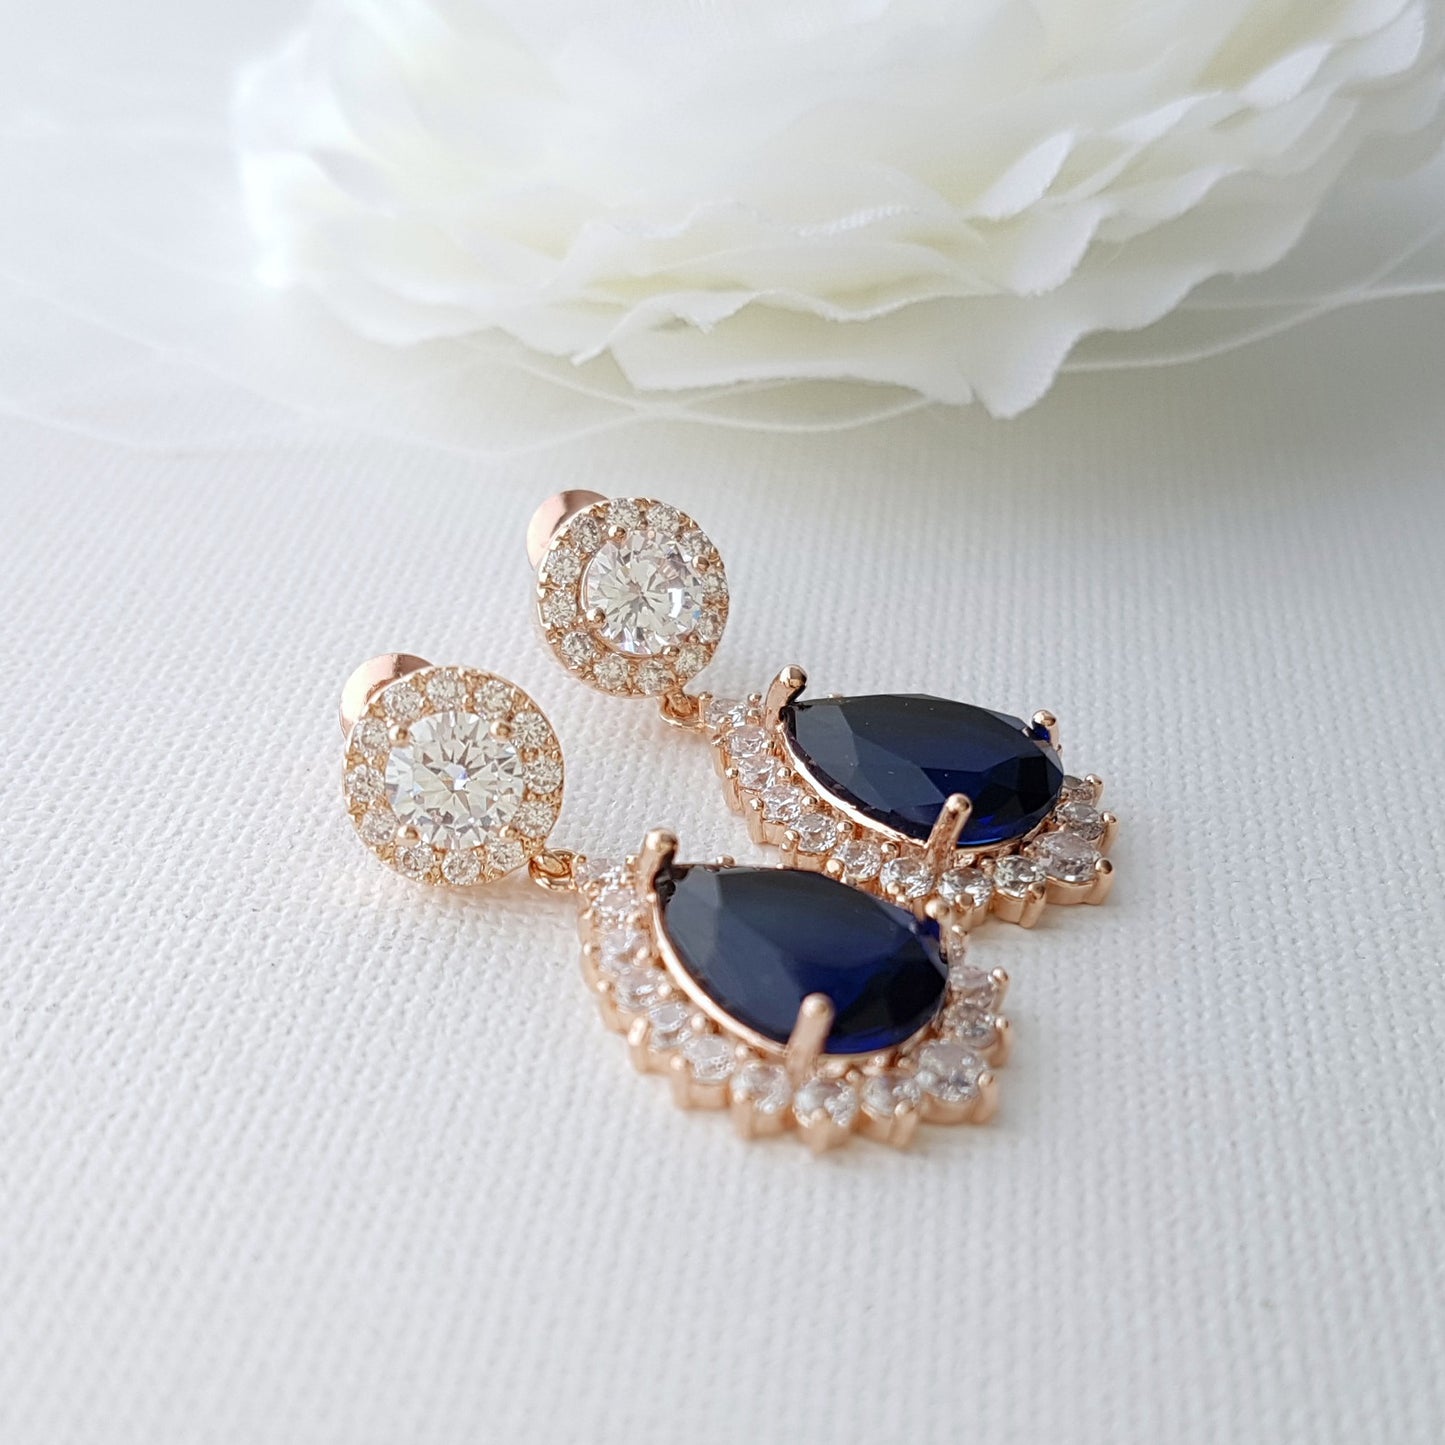 Elegant Blue Bridal Jewelry Set Something Blue for Weddings-Aoi